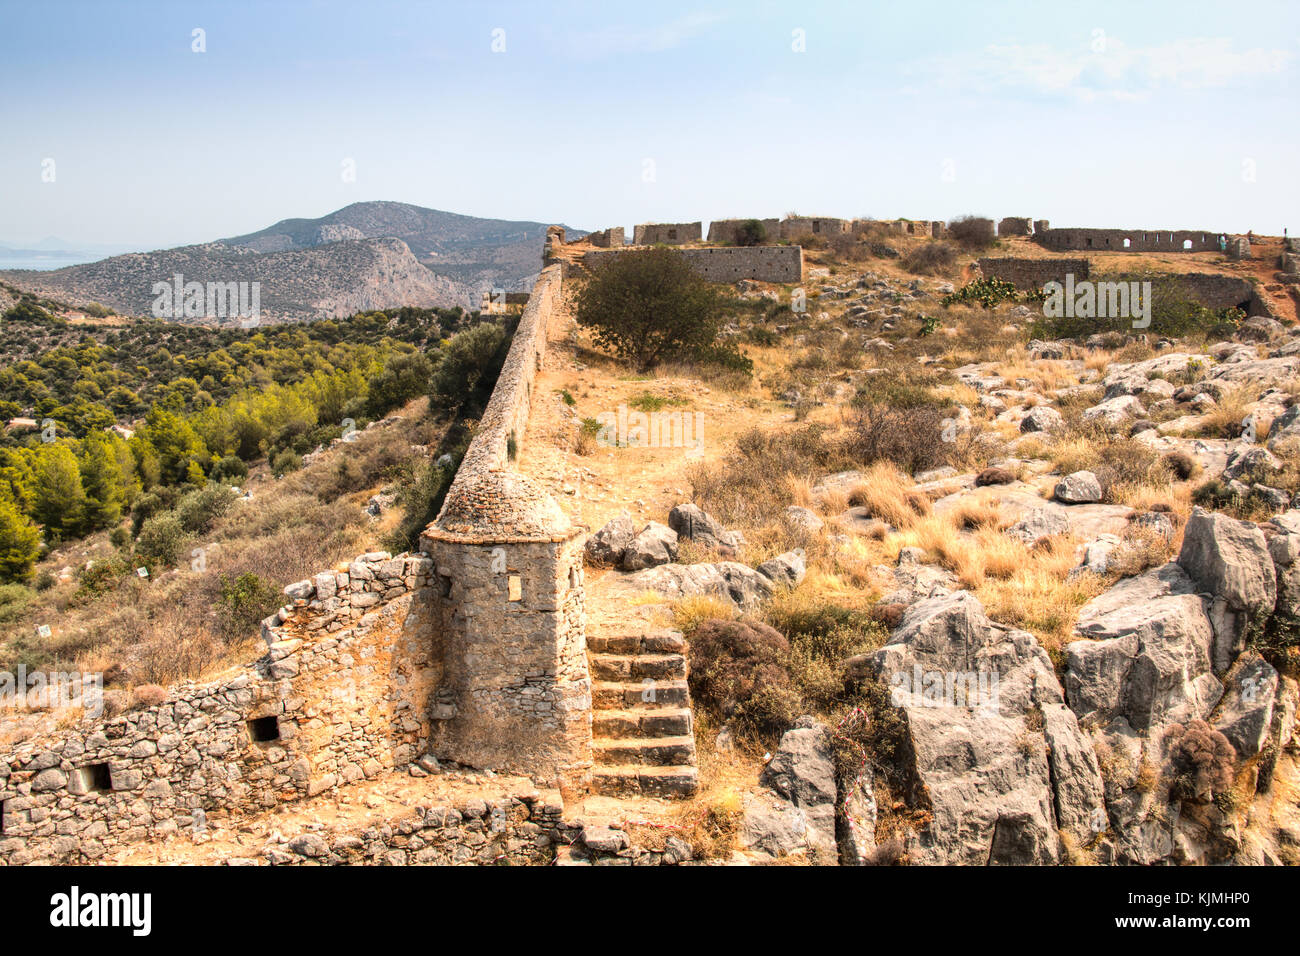 Le magnifique château de palamidi sur une colline dans le centre de l'ancienne ville nauplie en Grèce Banque D'Images